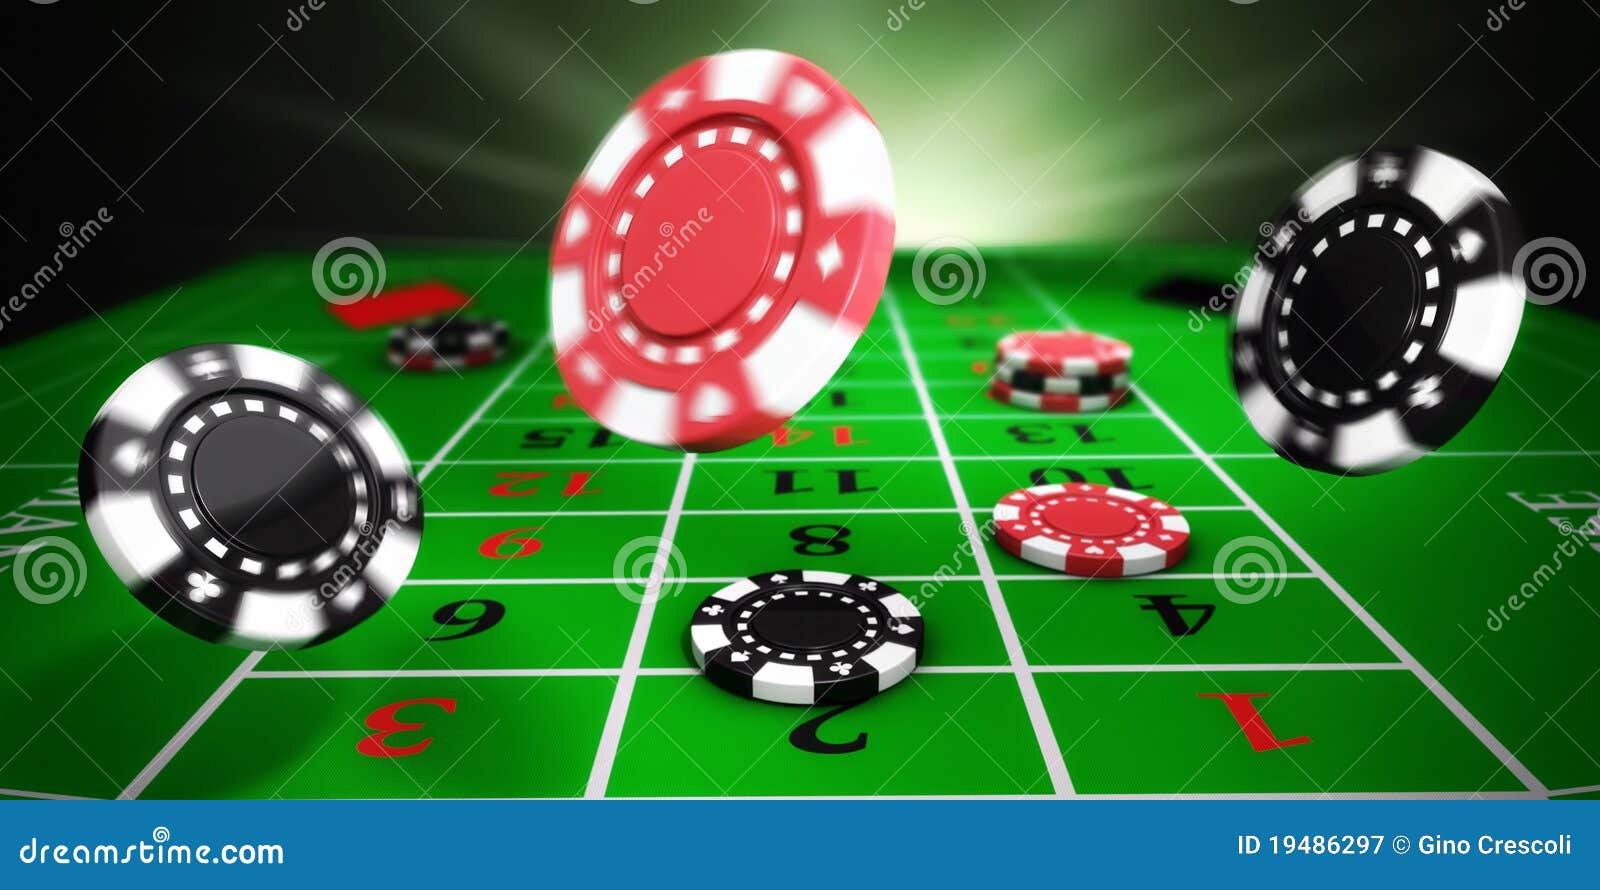 bitkub online casino